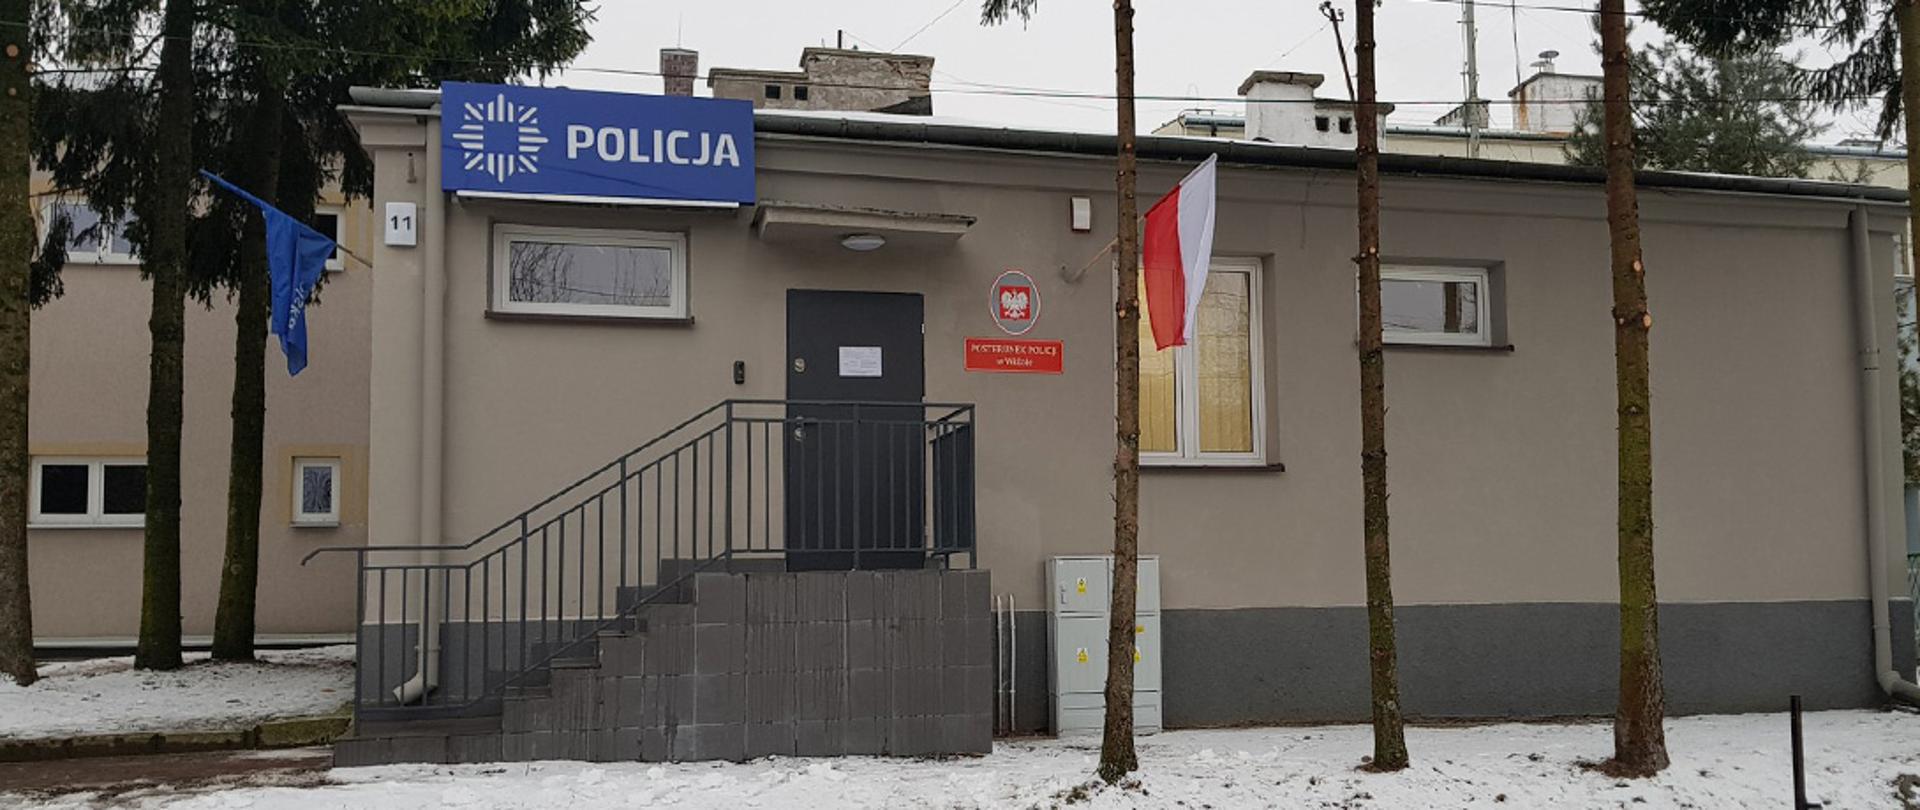 Budynek posterunku Policji w Wiźnie w województwie podlaskim.